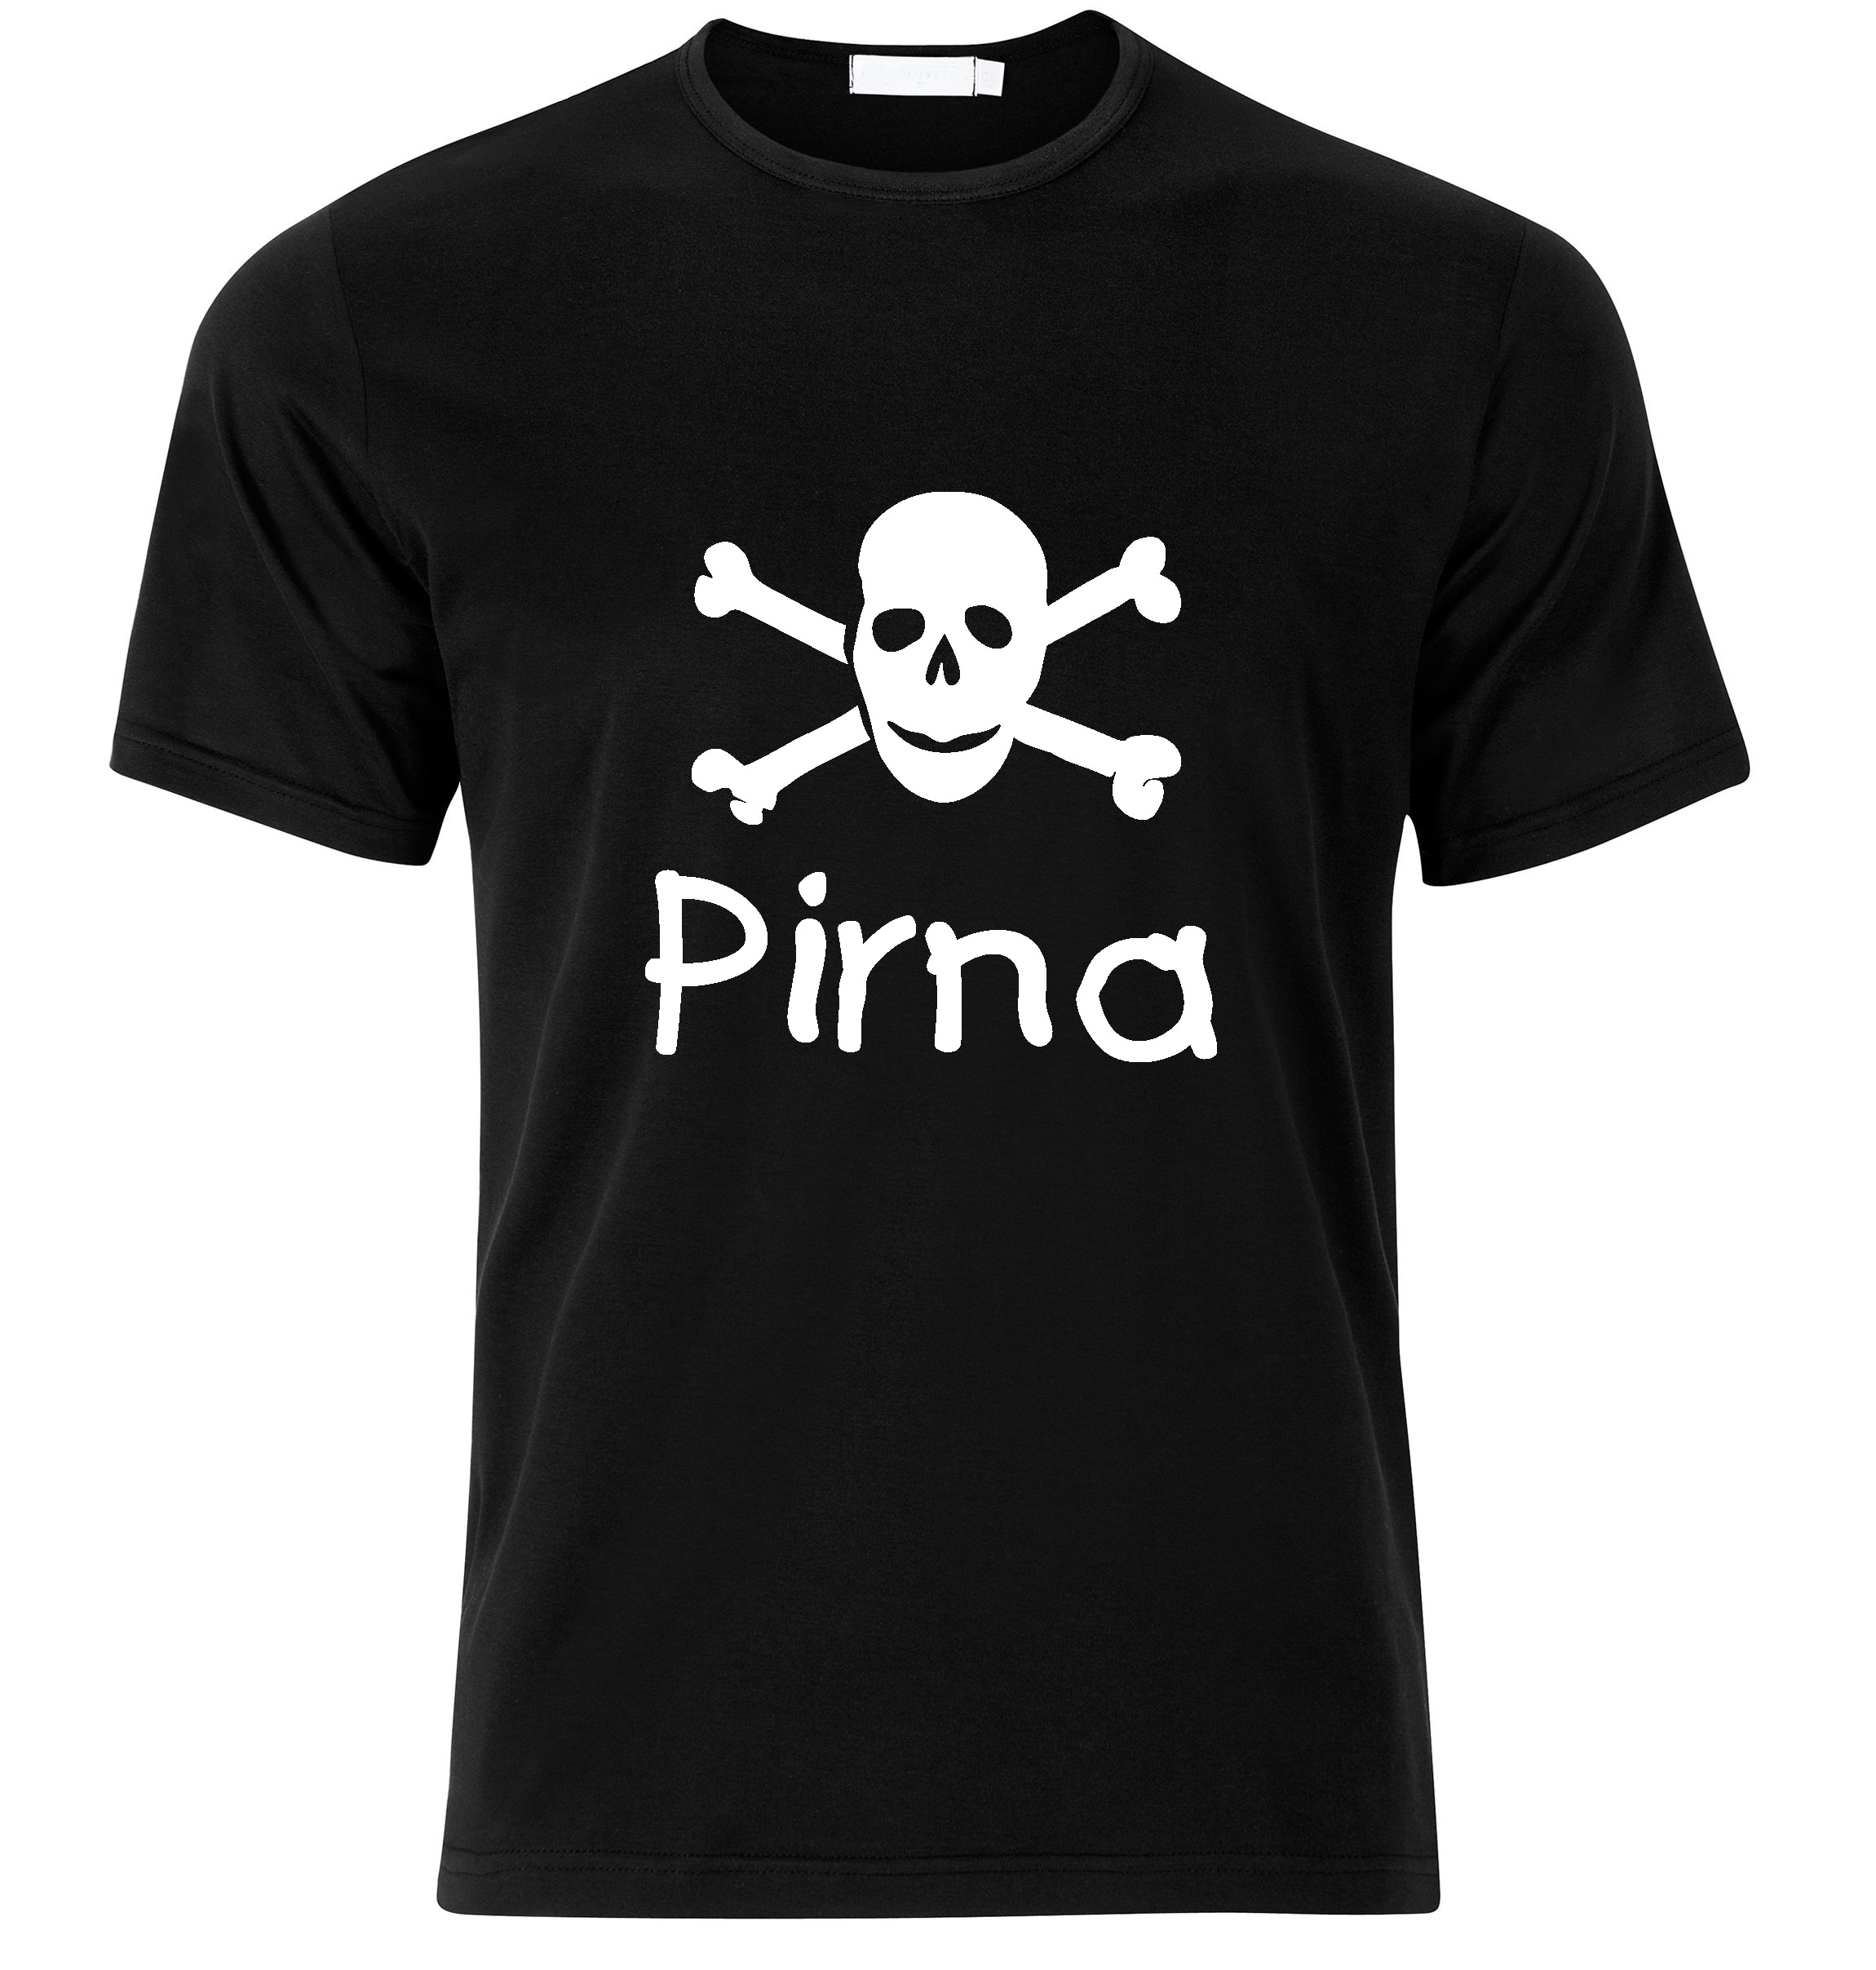 T-Shirt Pirna Jolly Roger, Totenkopf